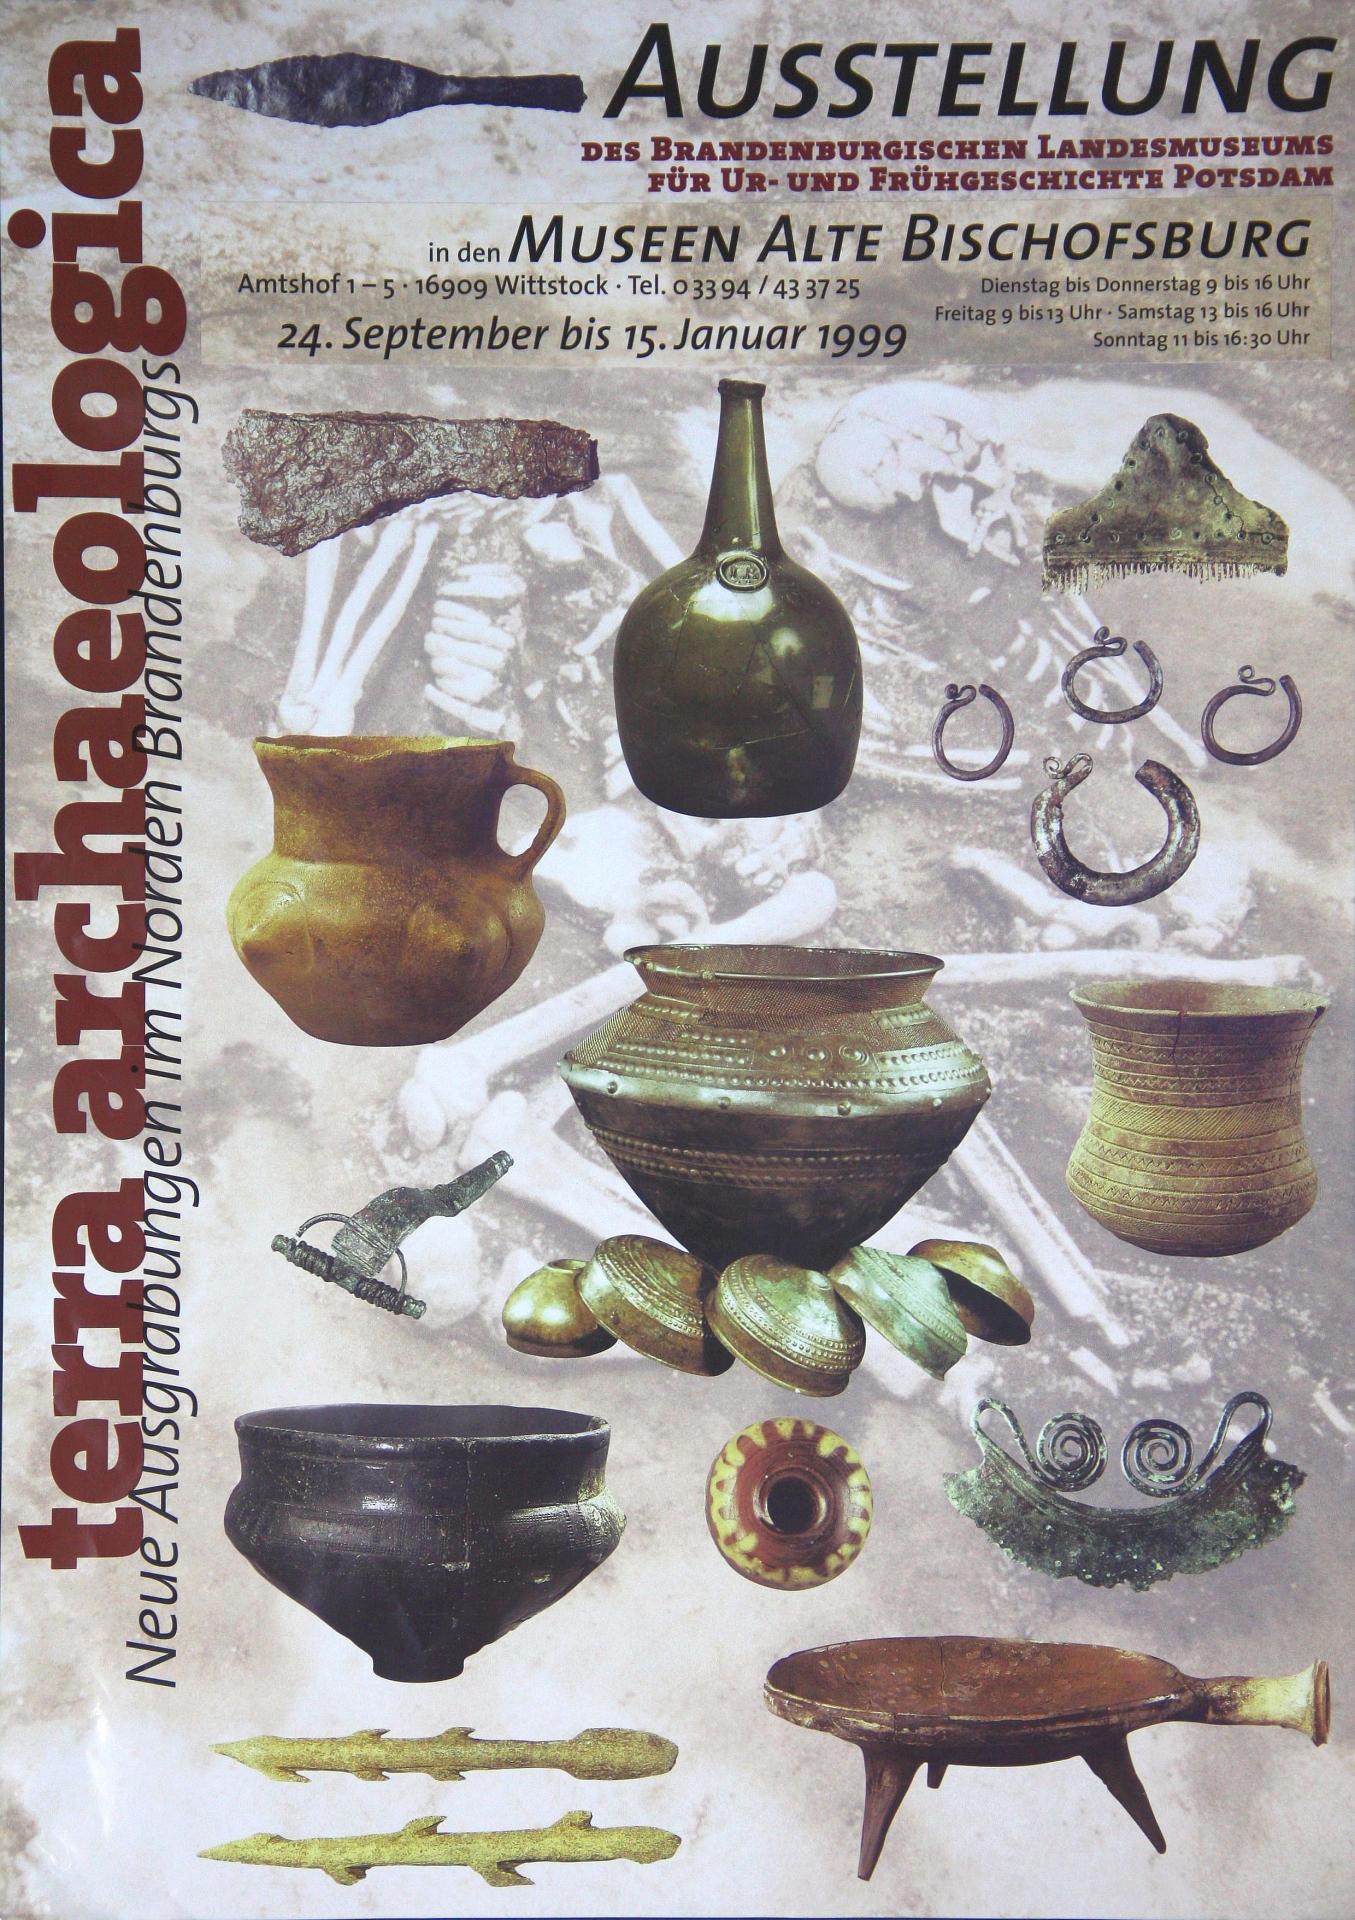 1998/1999 terra archaeologica Ausstellung des Brandenburgischen Landesmuseums für Ur- und Frühgeschichte Potsdam